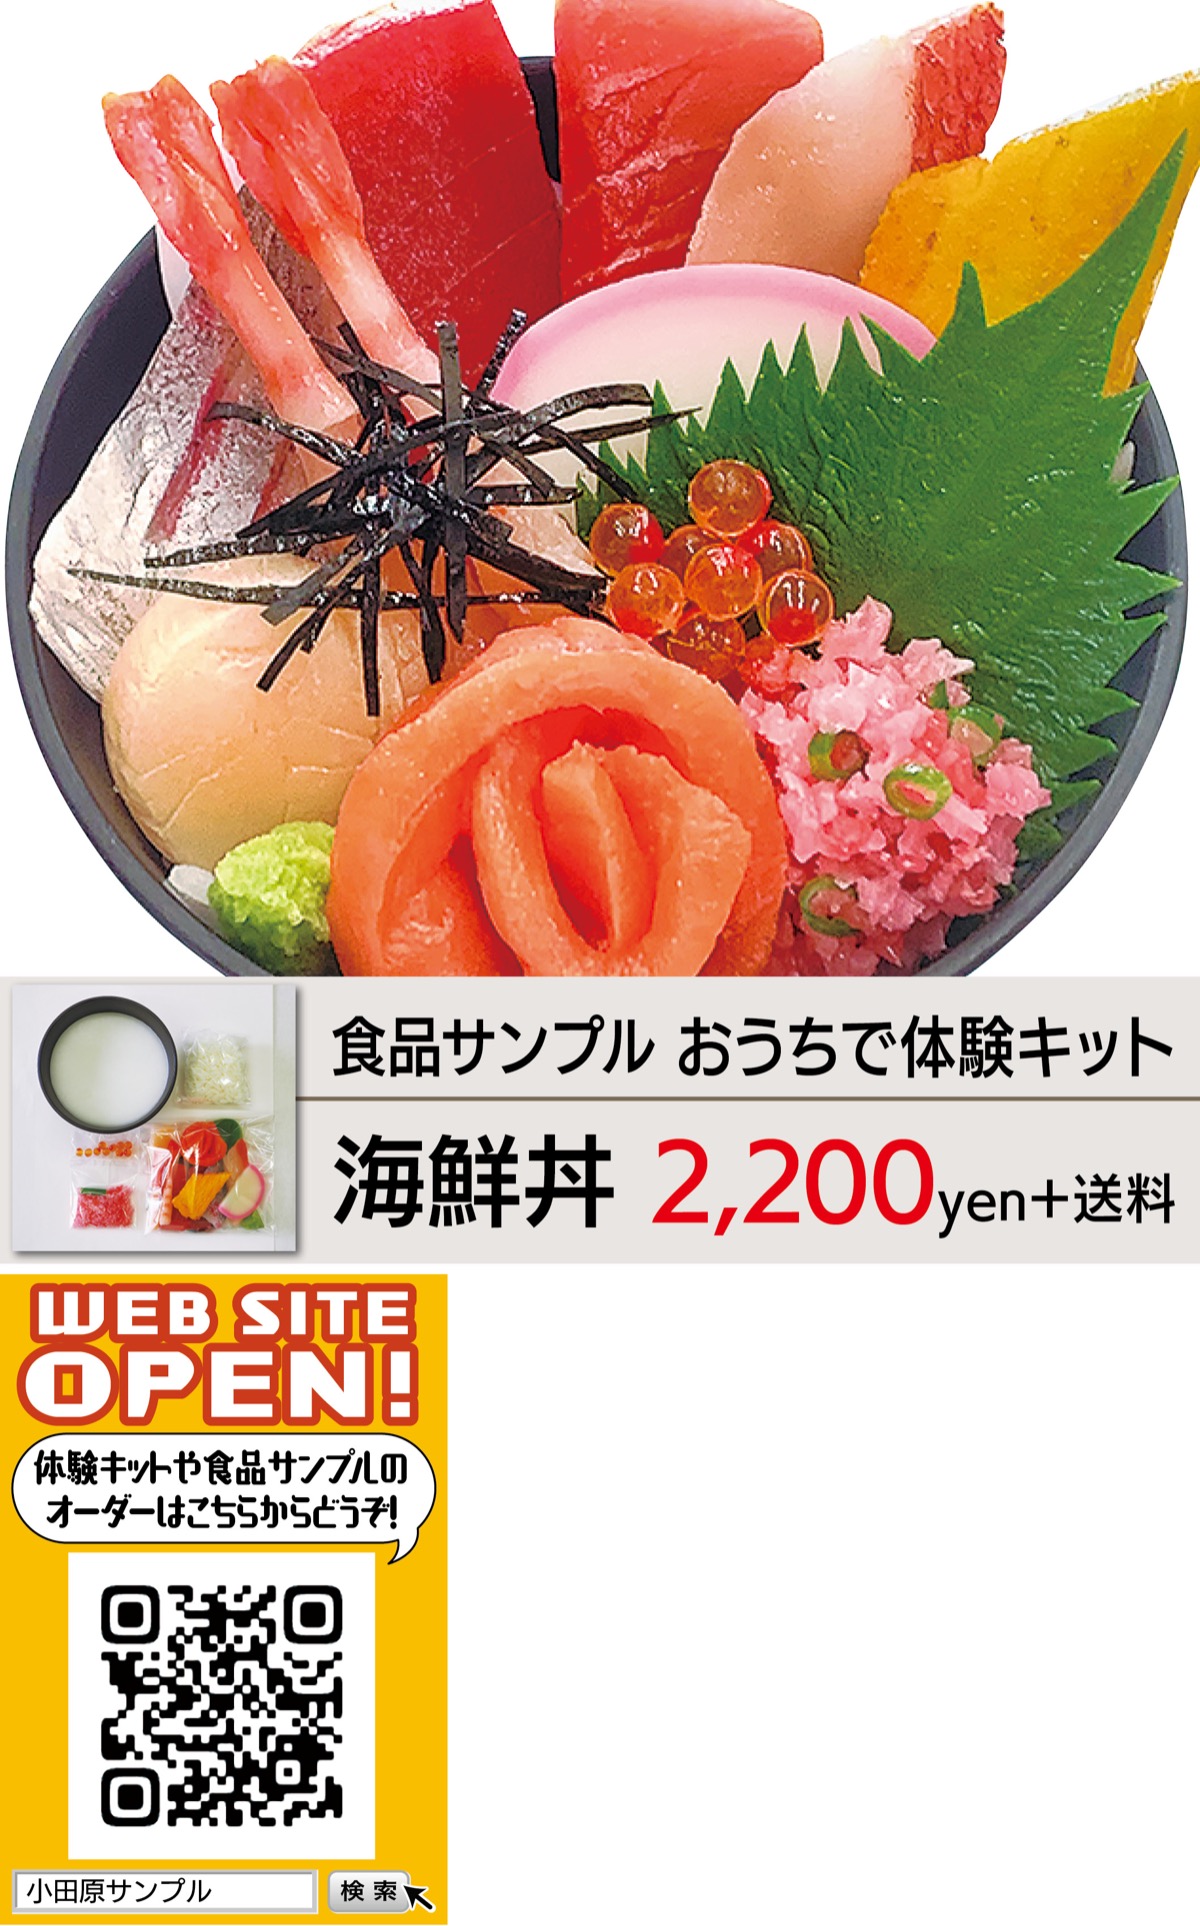 注目ブランド 日本職人が作る 食品サンプル ズワイガニ IP-385 その他おもちゃ FONDOBLAKA